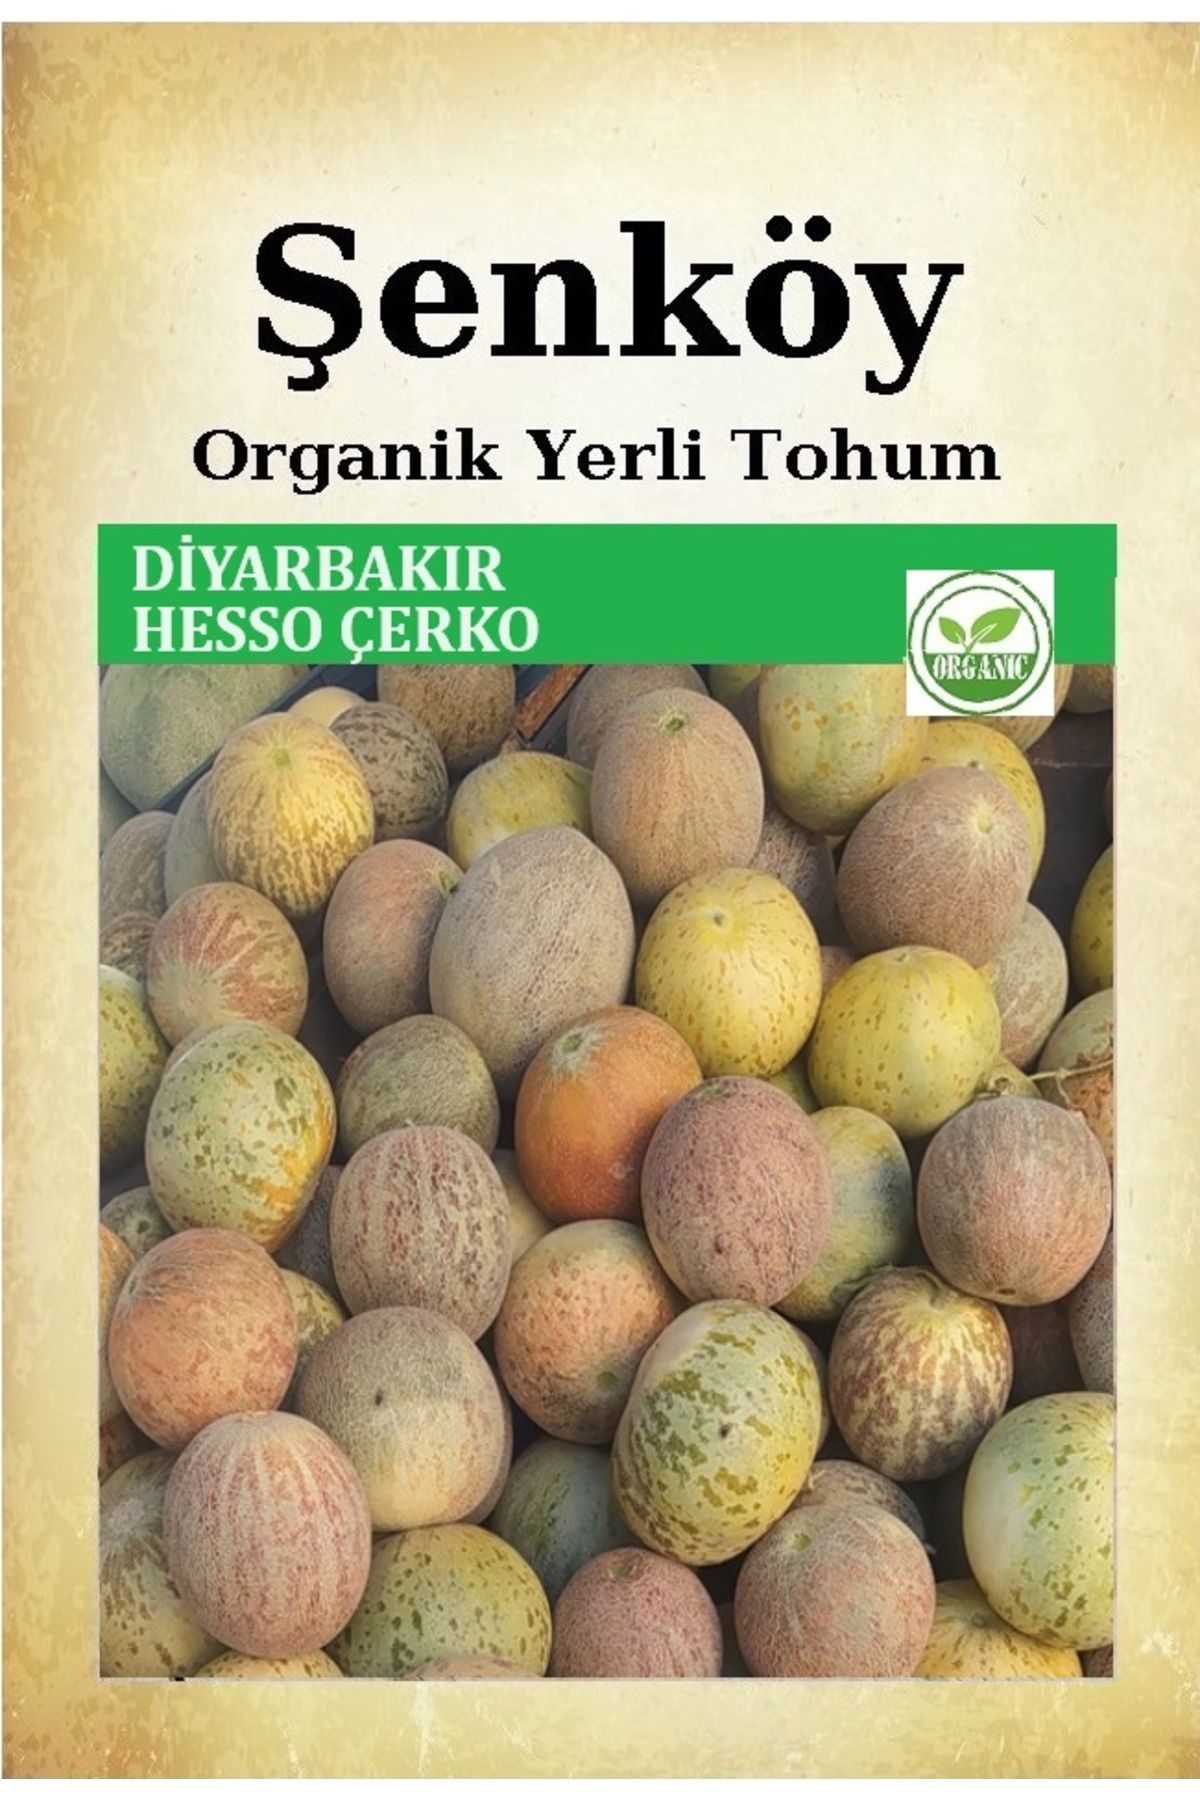 Şenköy Yerli Diyarbakır Hesso Çerko Kavun Tohumu Doğal Ata Tohum Pakette 5 Gr 150 Tohum + Hediye Tohum